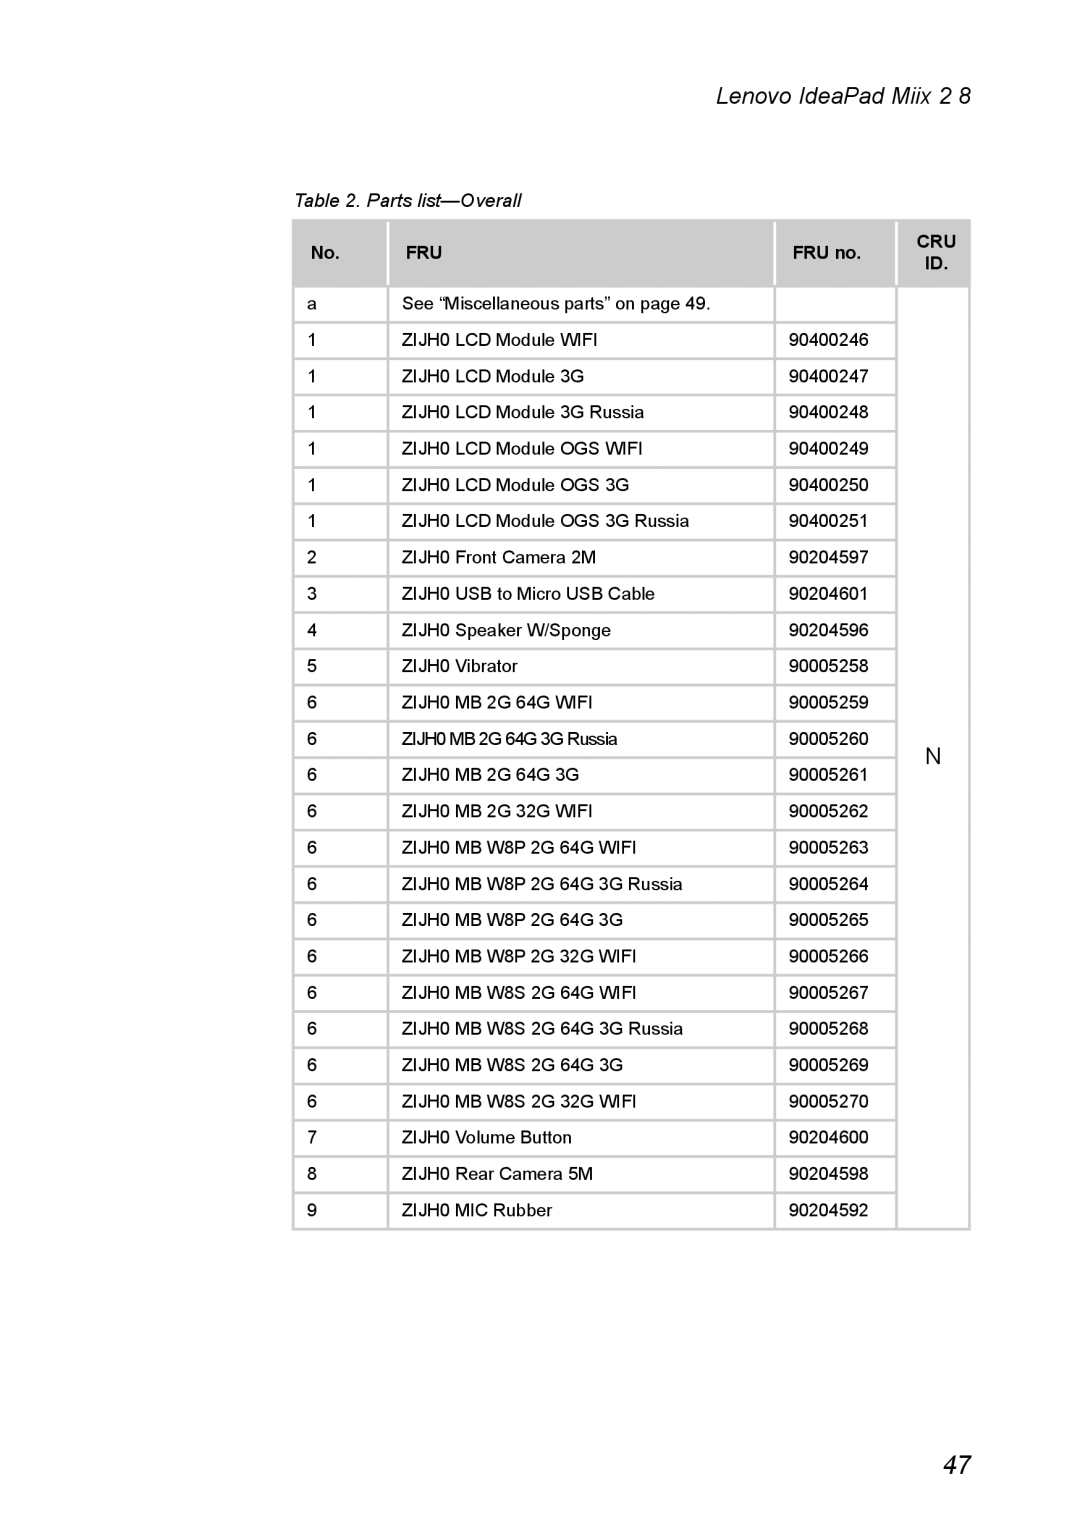 Lenovo MIIX 2 8 manual Parts list-Overall, Lenovo IdeaPad Miix, FRU no, Cru Id 